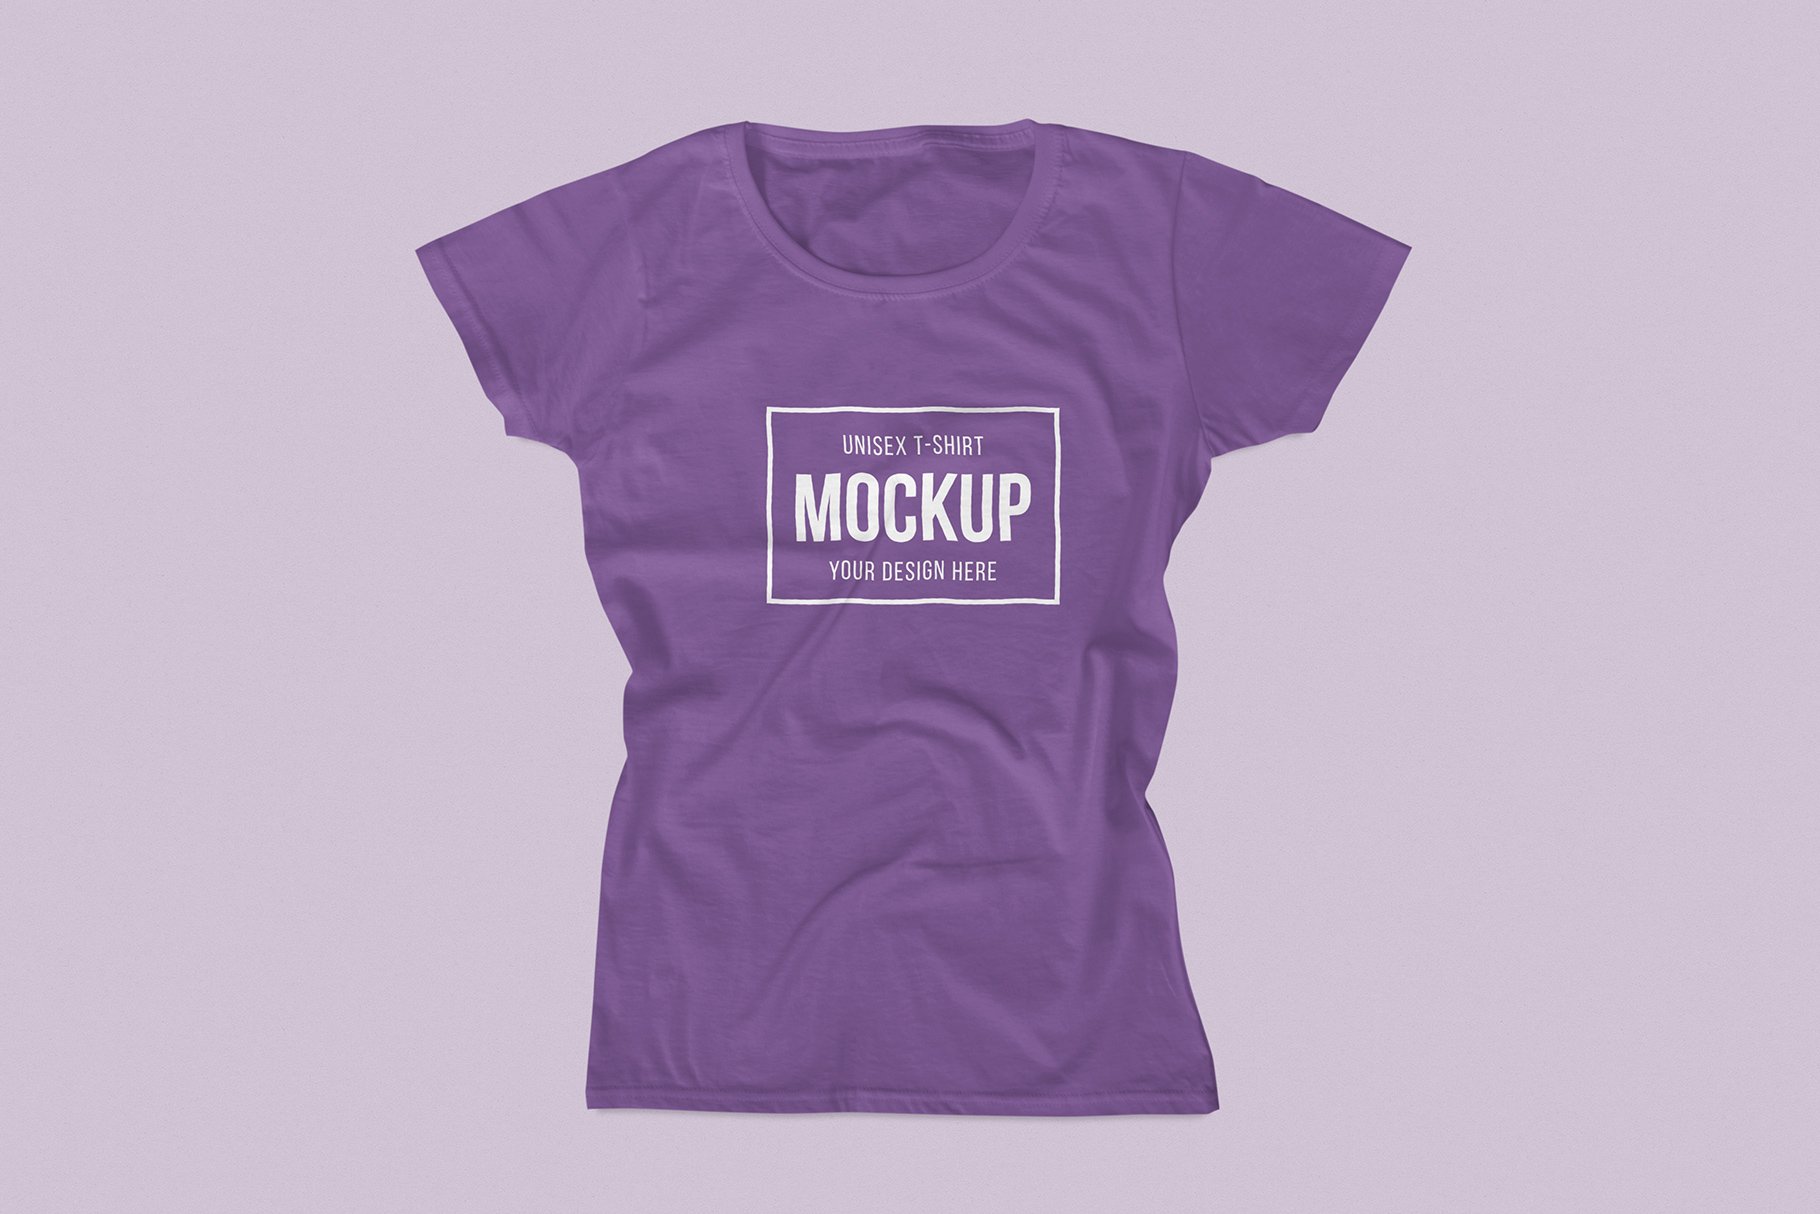 Unisex T-Shirt Mockup Pack - Design Cuts